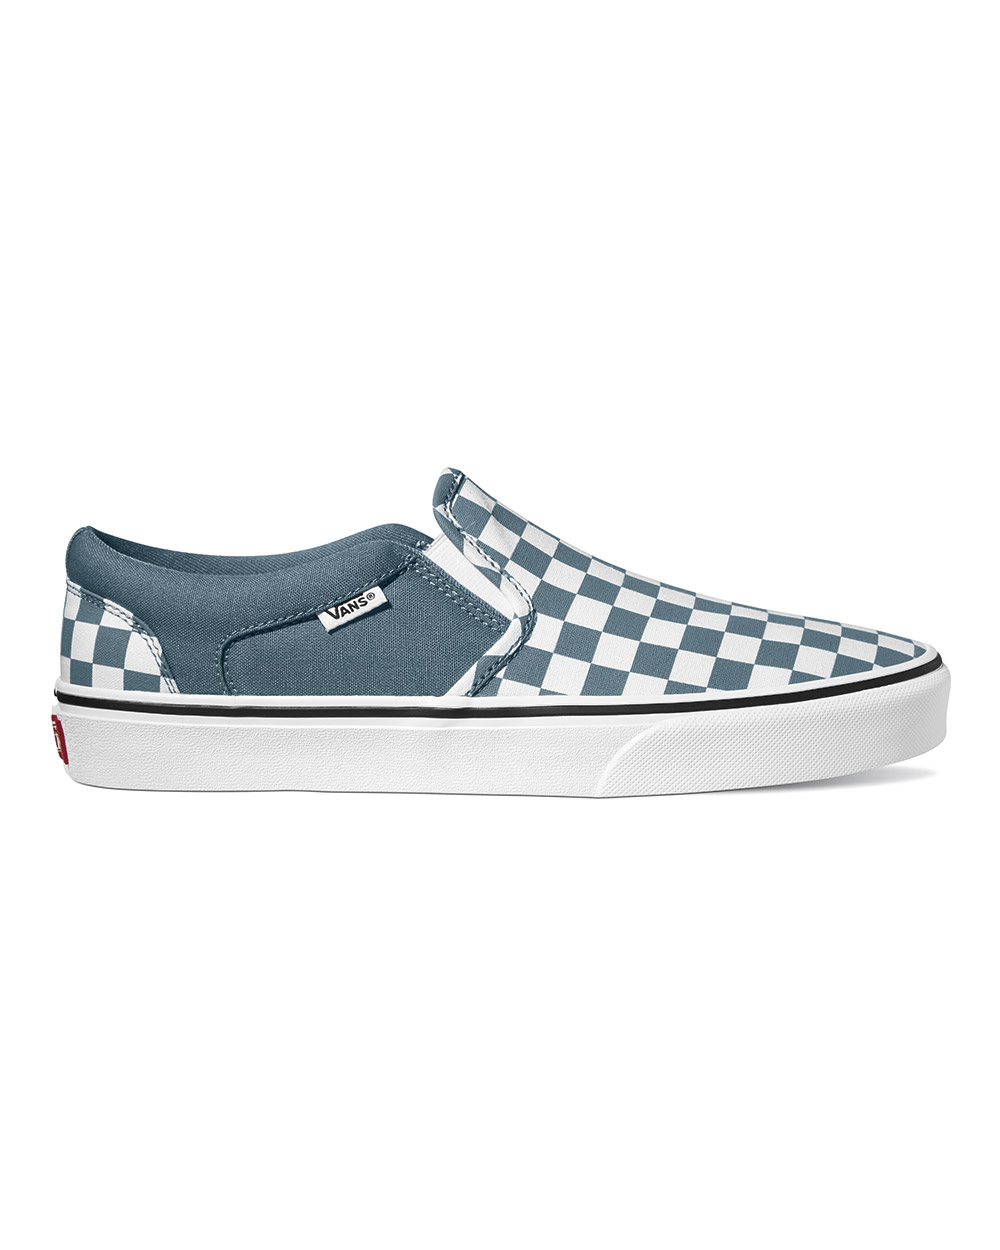 Vans Asher Checkerboard (blue mirage/white)